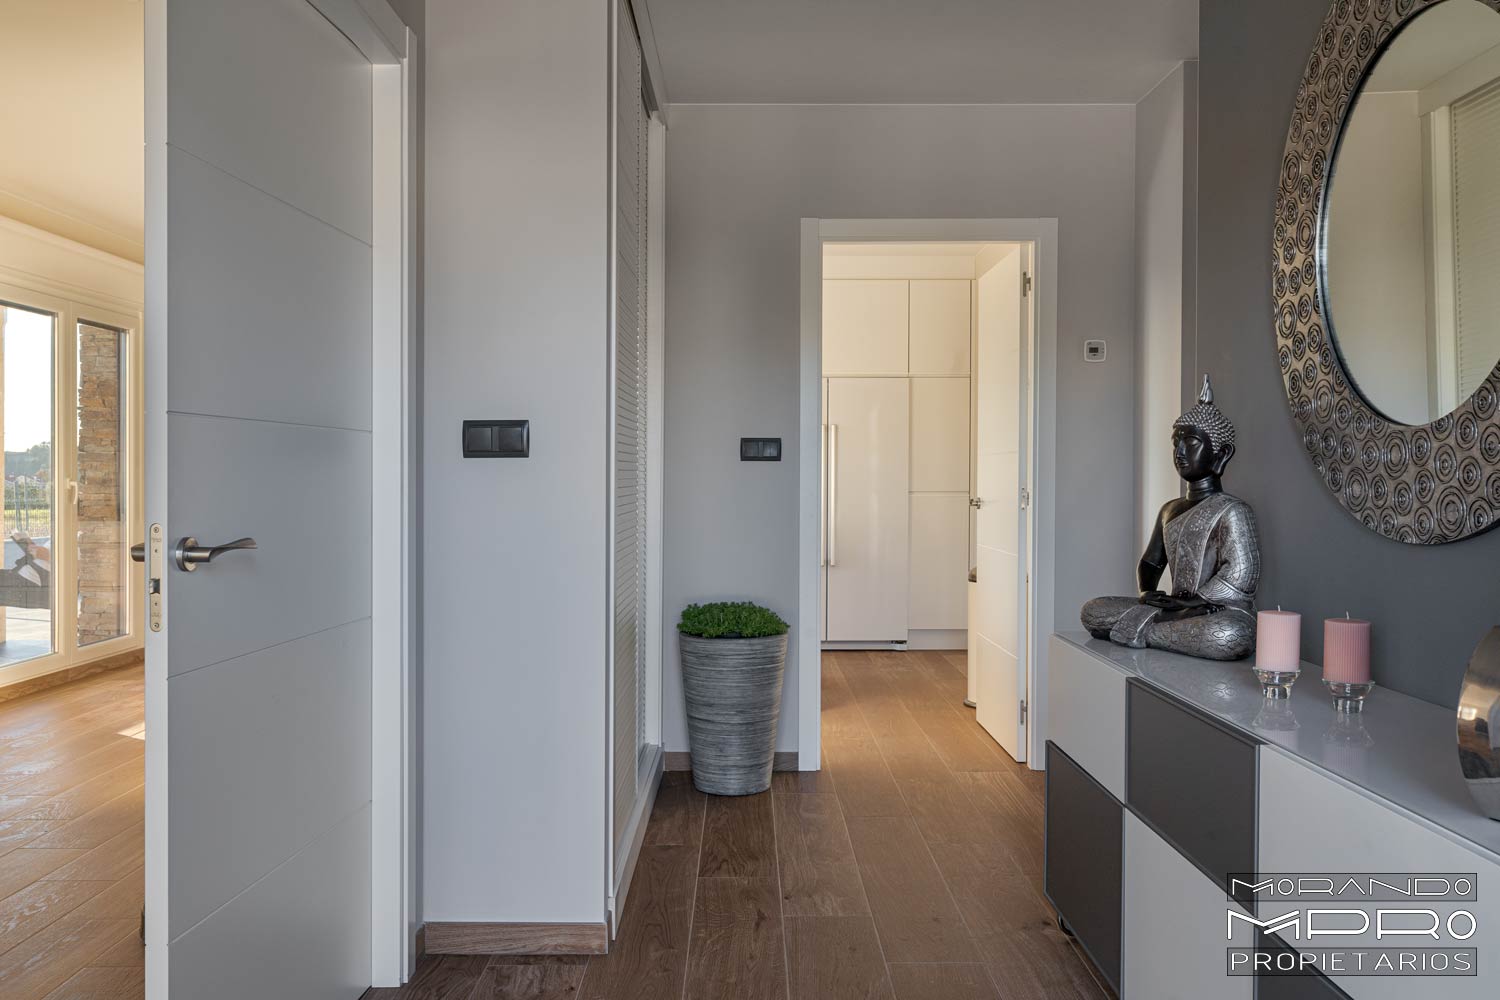 Imagen del interior de una casa, mostrando un pasillo con puertas blancas, suelo de madera y paredes grises. Una figura decorativa de Buda y un gran espejo circular adornan el espacio.